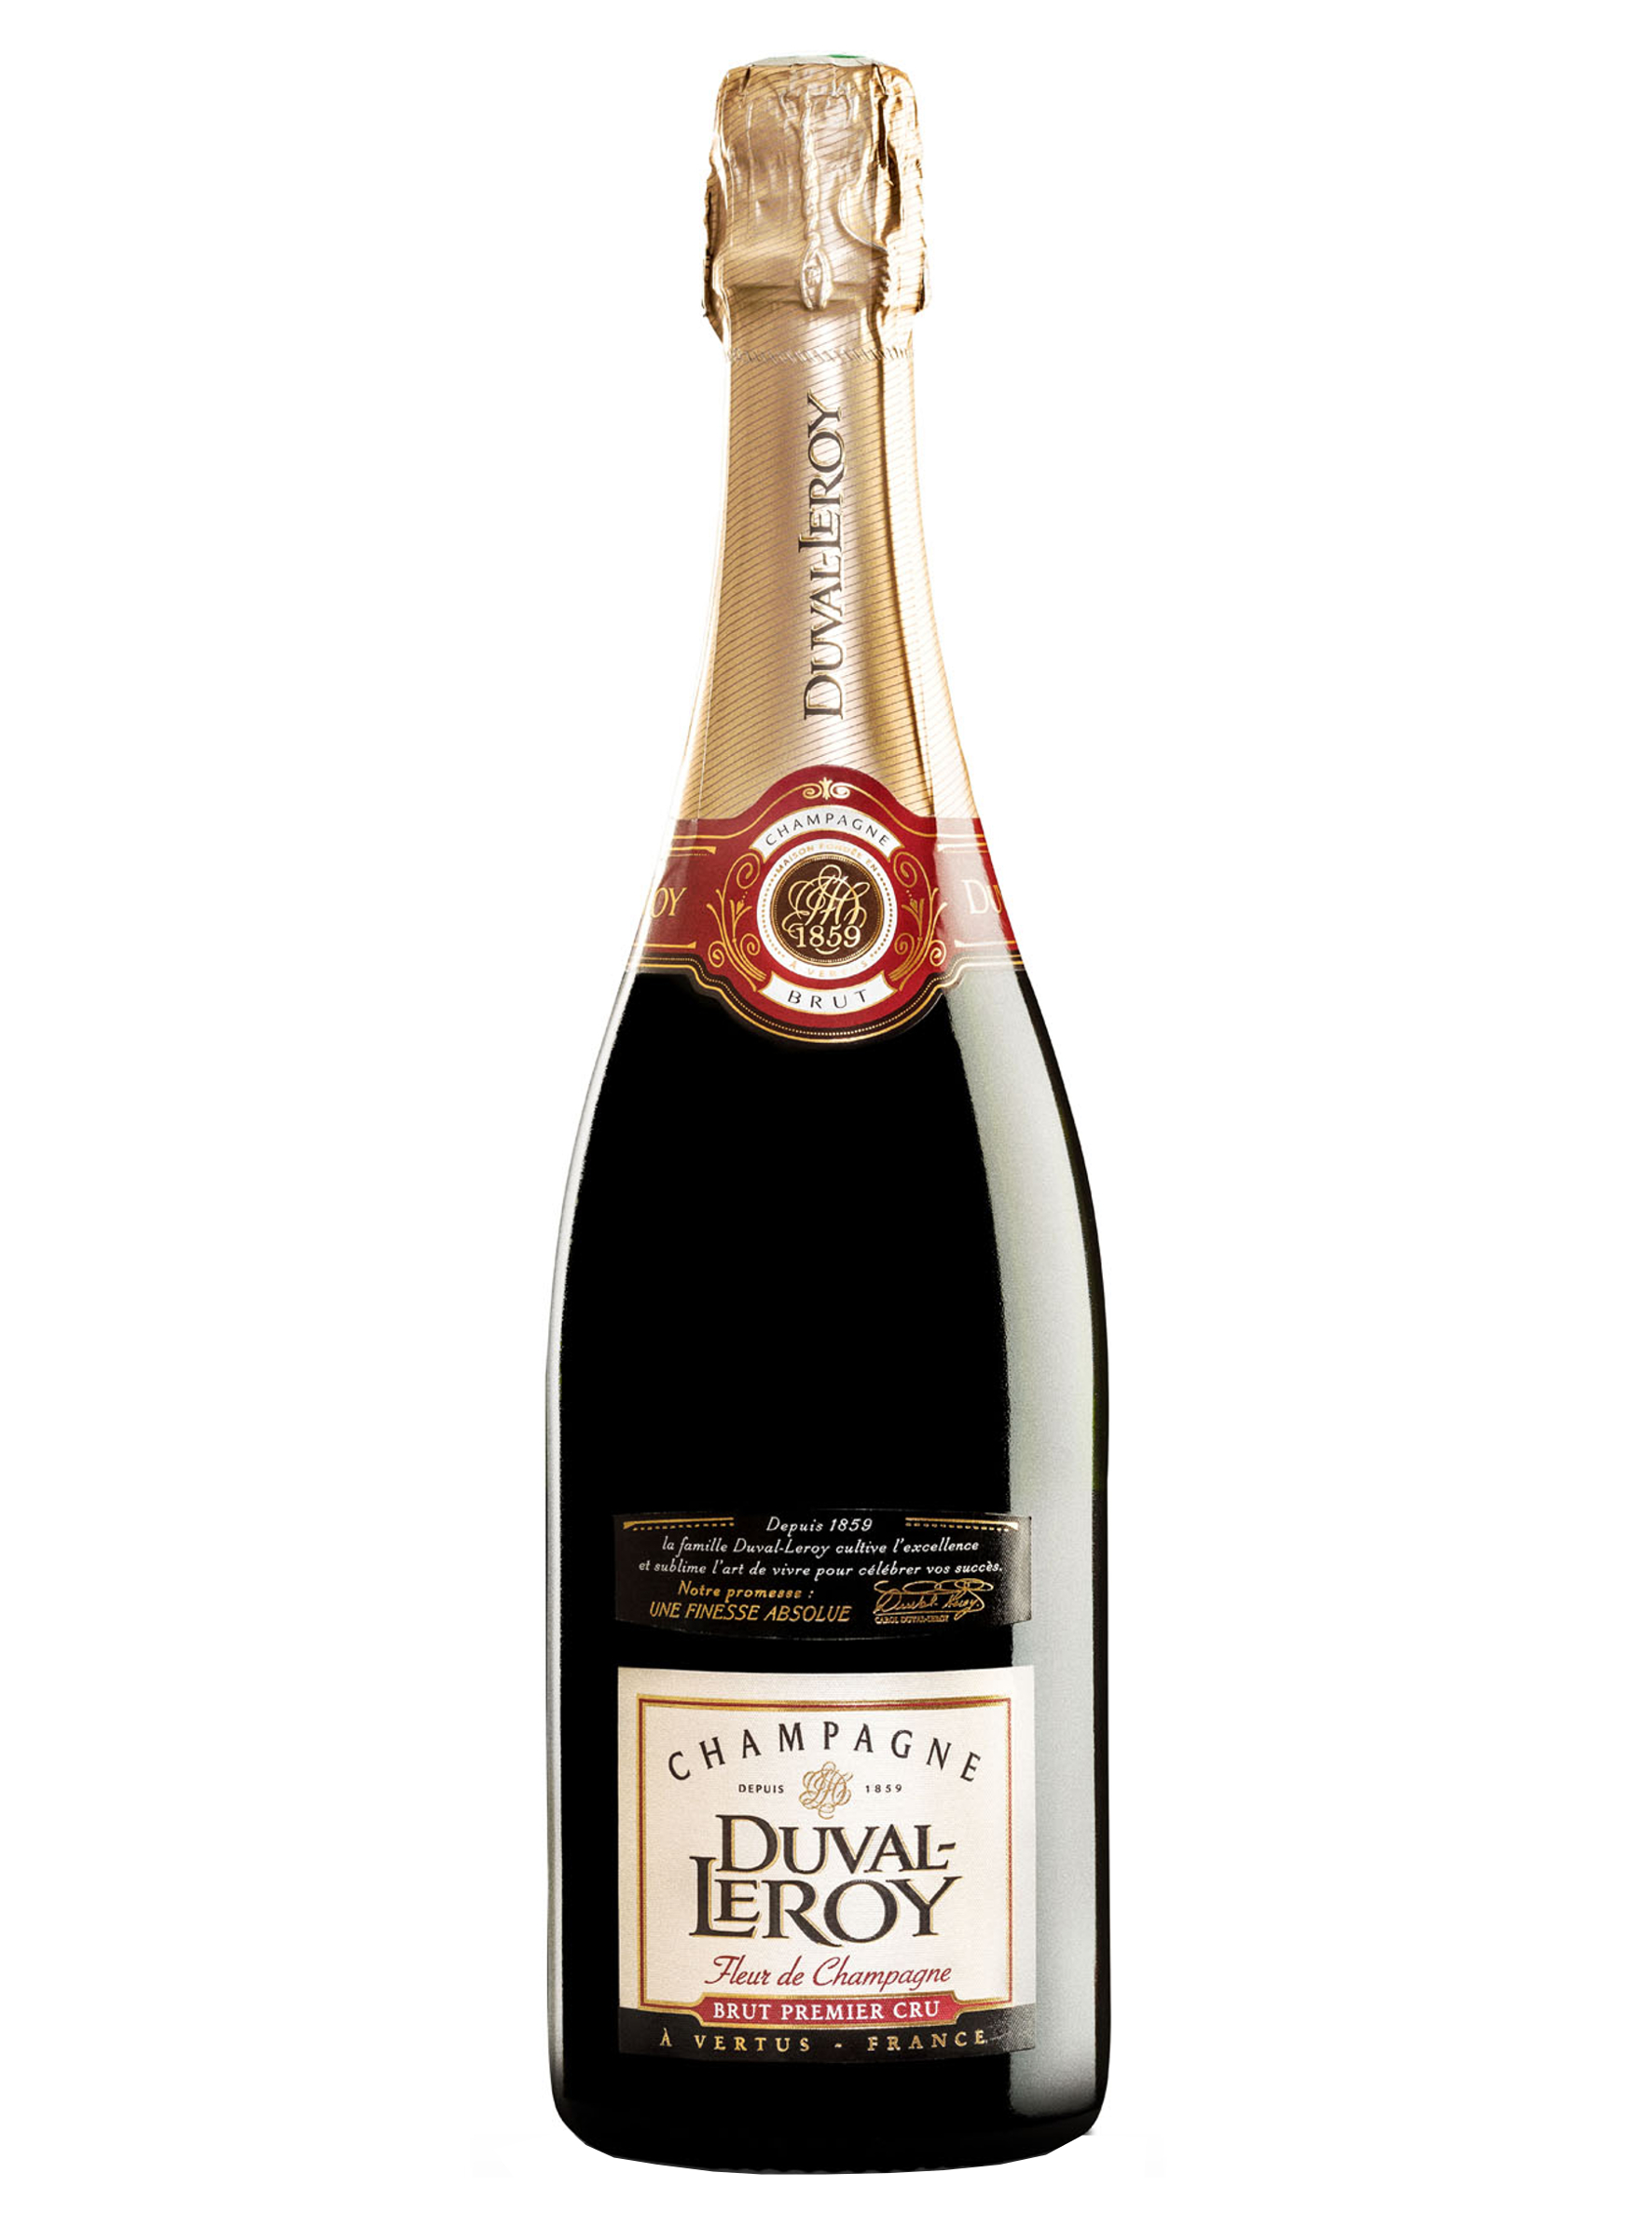 Duval-Leroy Fleure de Champagne Brut Premier Cru